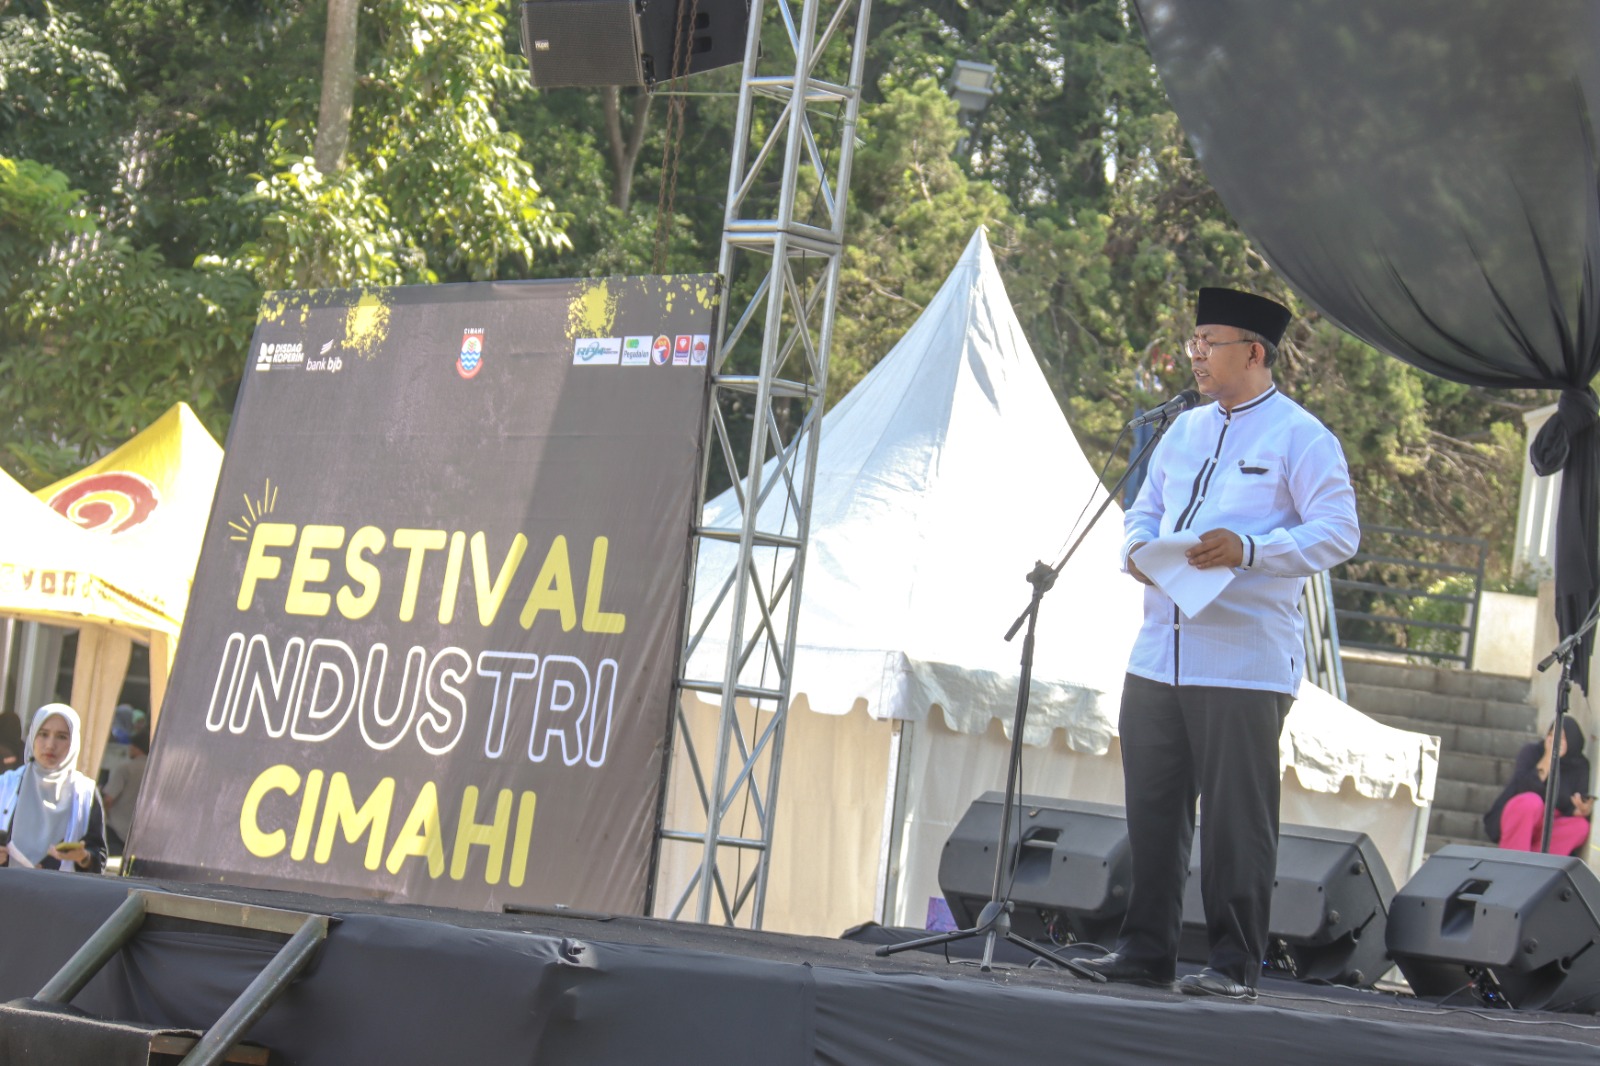 Festival Industri Jadi Ajang Promosi Sekaligus Tingkatkan Daya Saing Industri Kota Cimahi